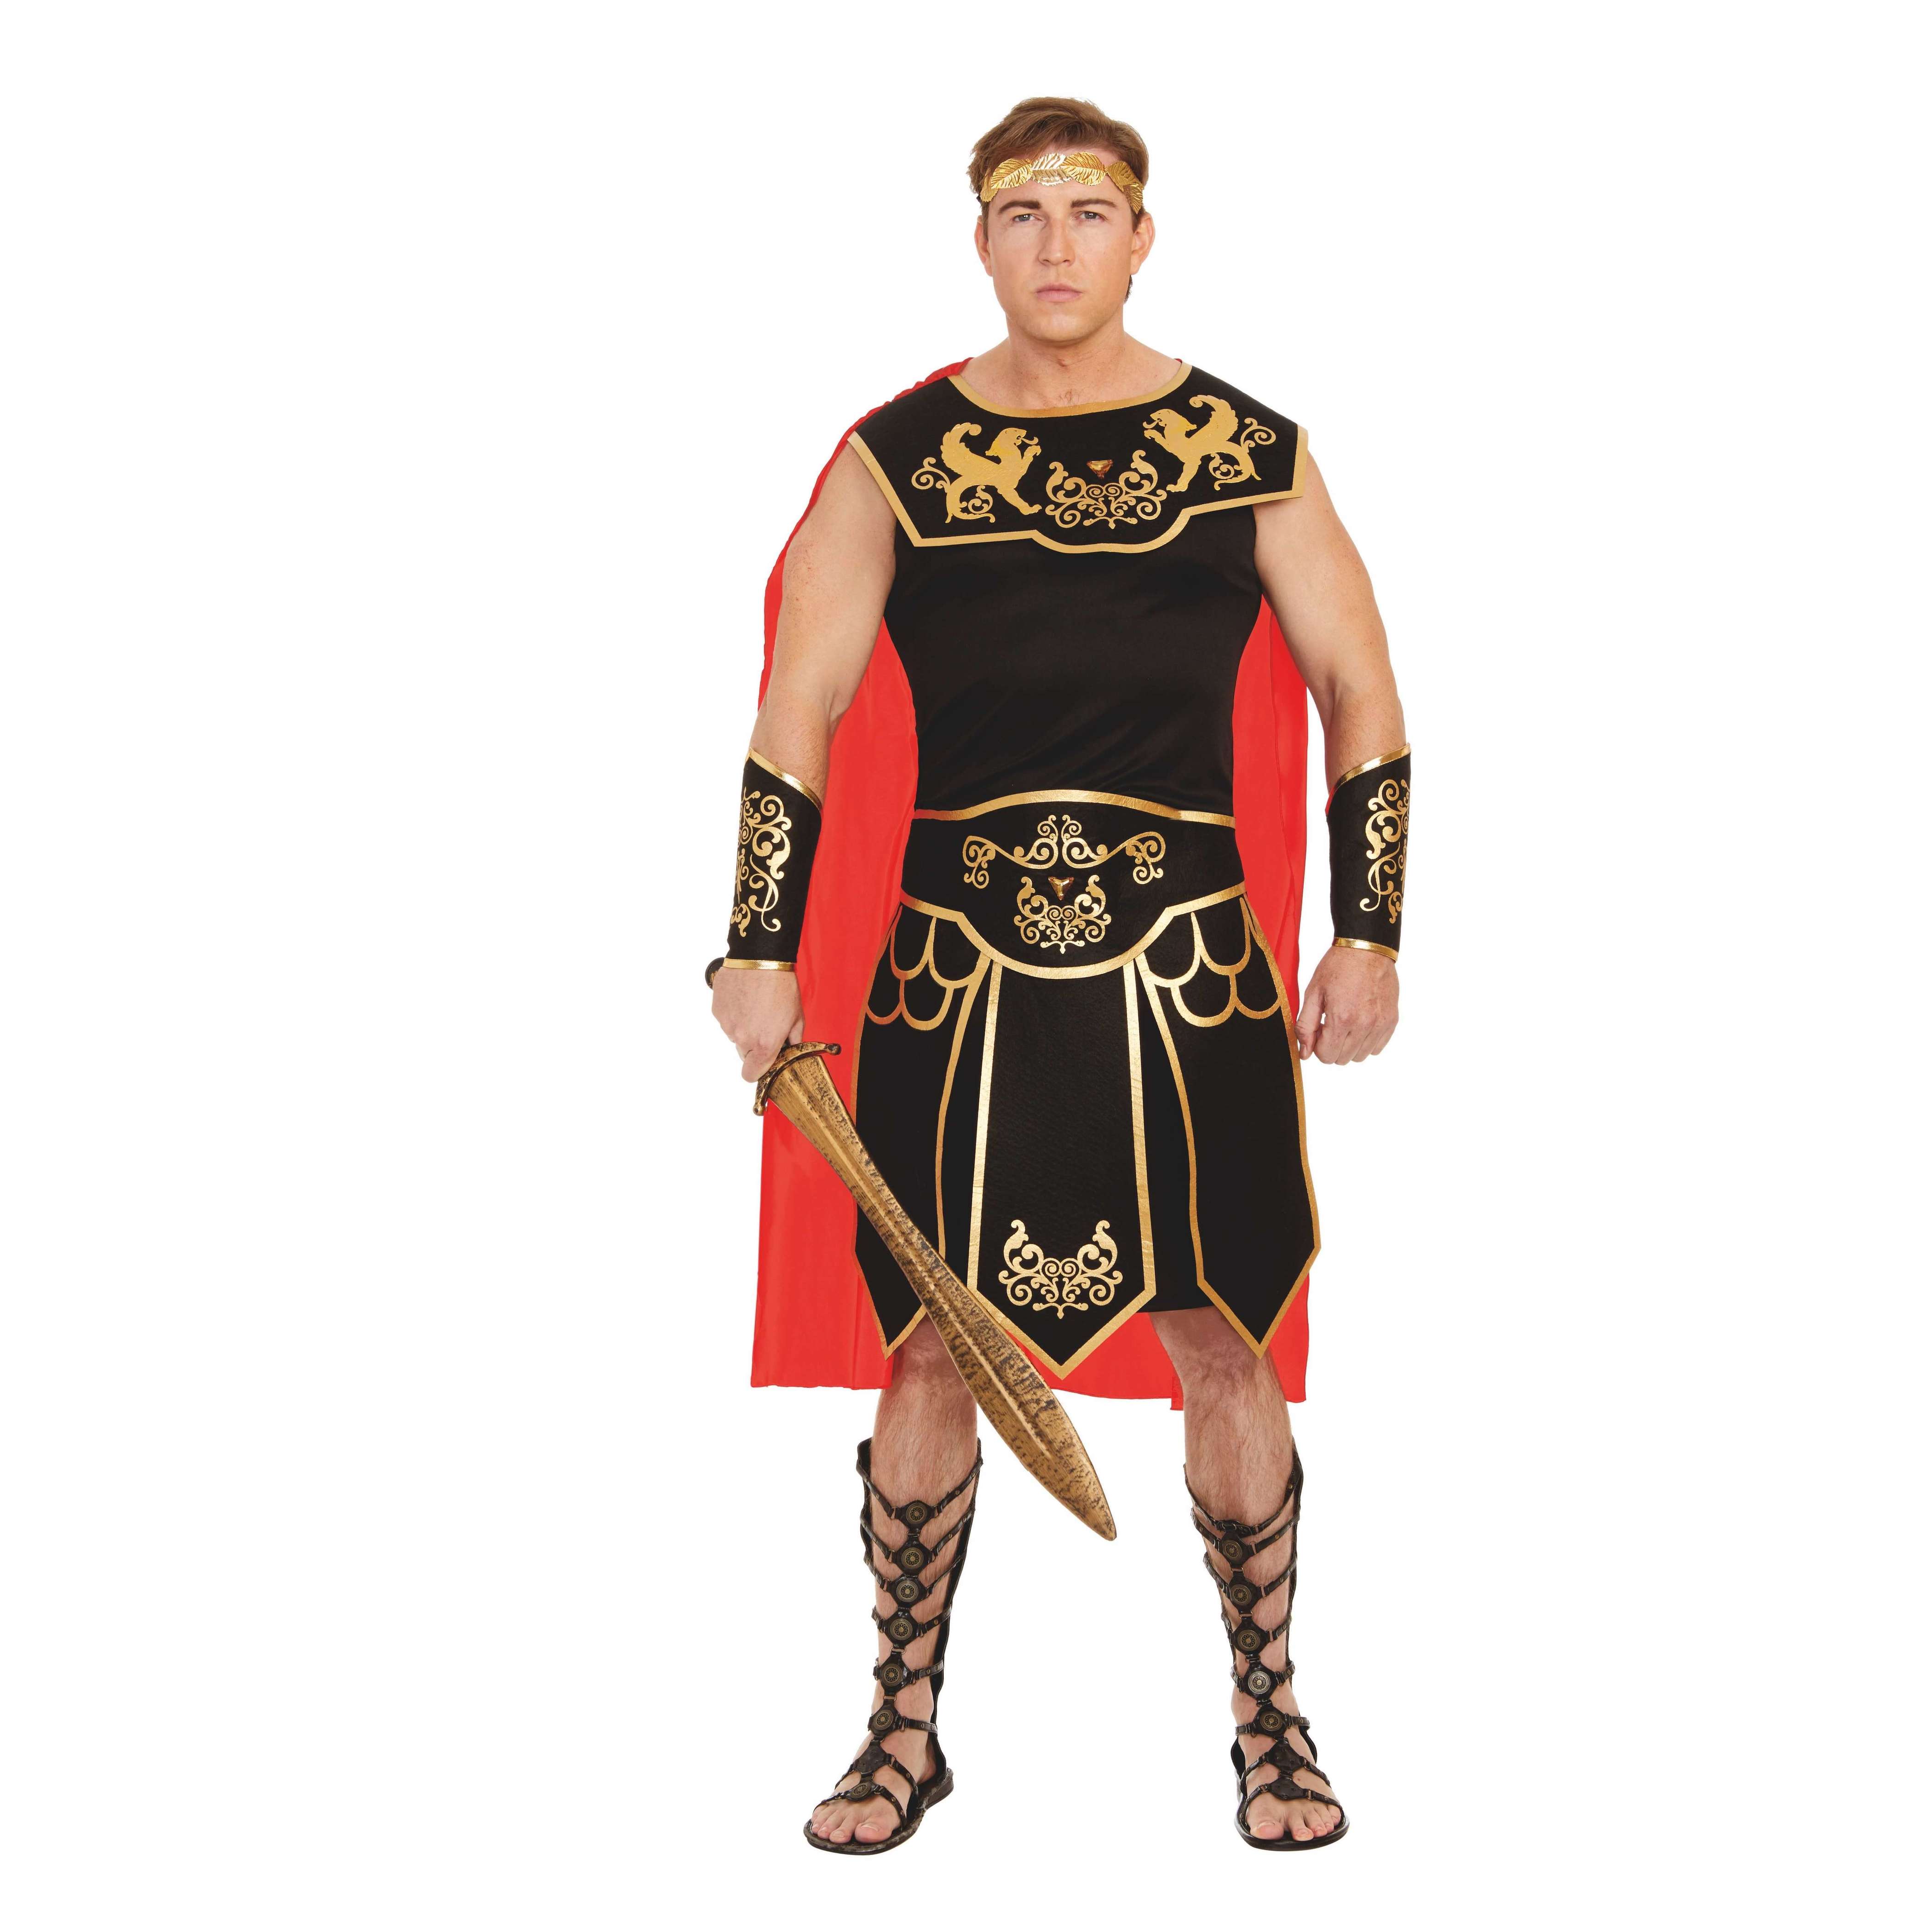 Julius Ceasar Adult Costume